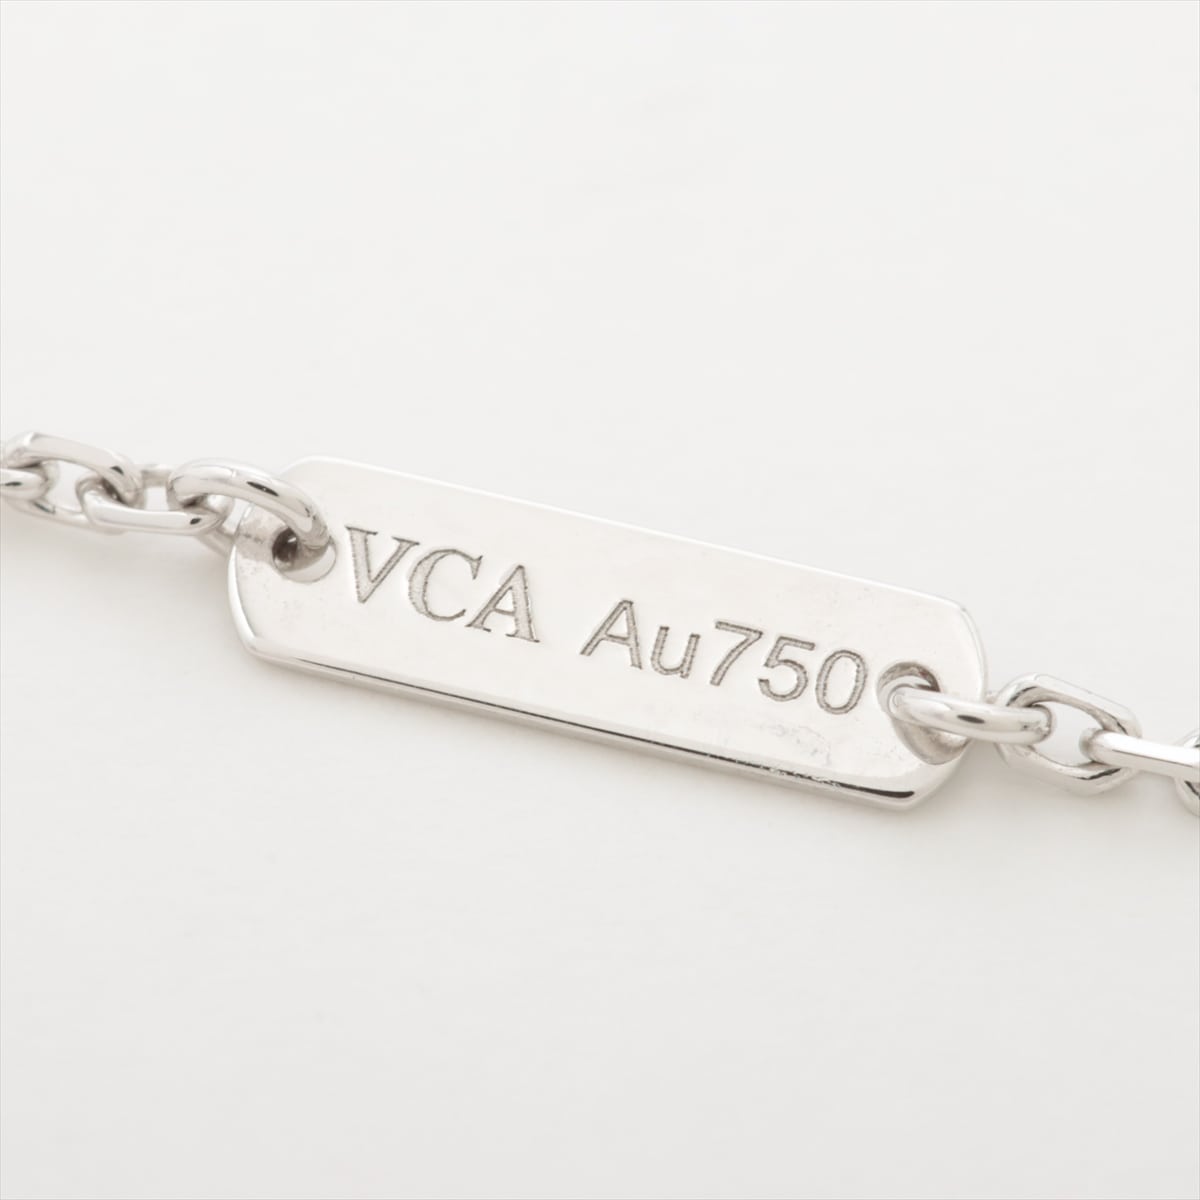 Van Cleef & Arpels vintage Alhambra  Diamond Necklace 750 (WG) 6.9g